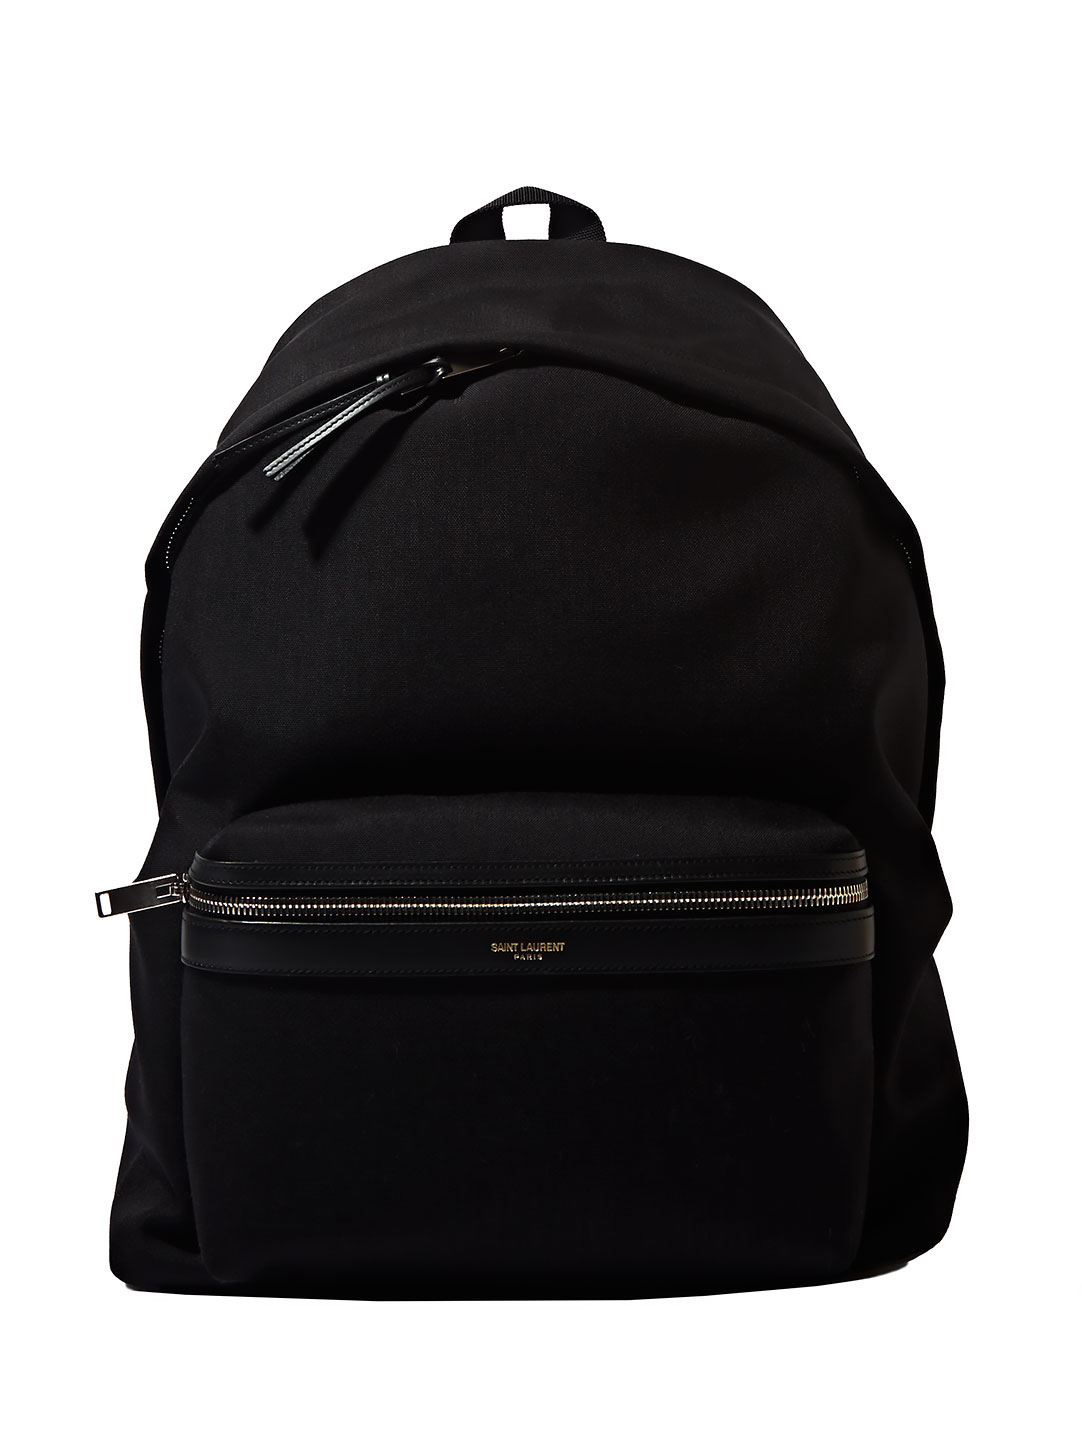 Saint laurent Mens Leather Details Backpack in Black for Men | Lyst